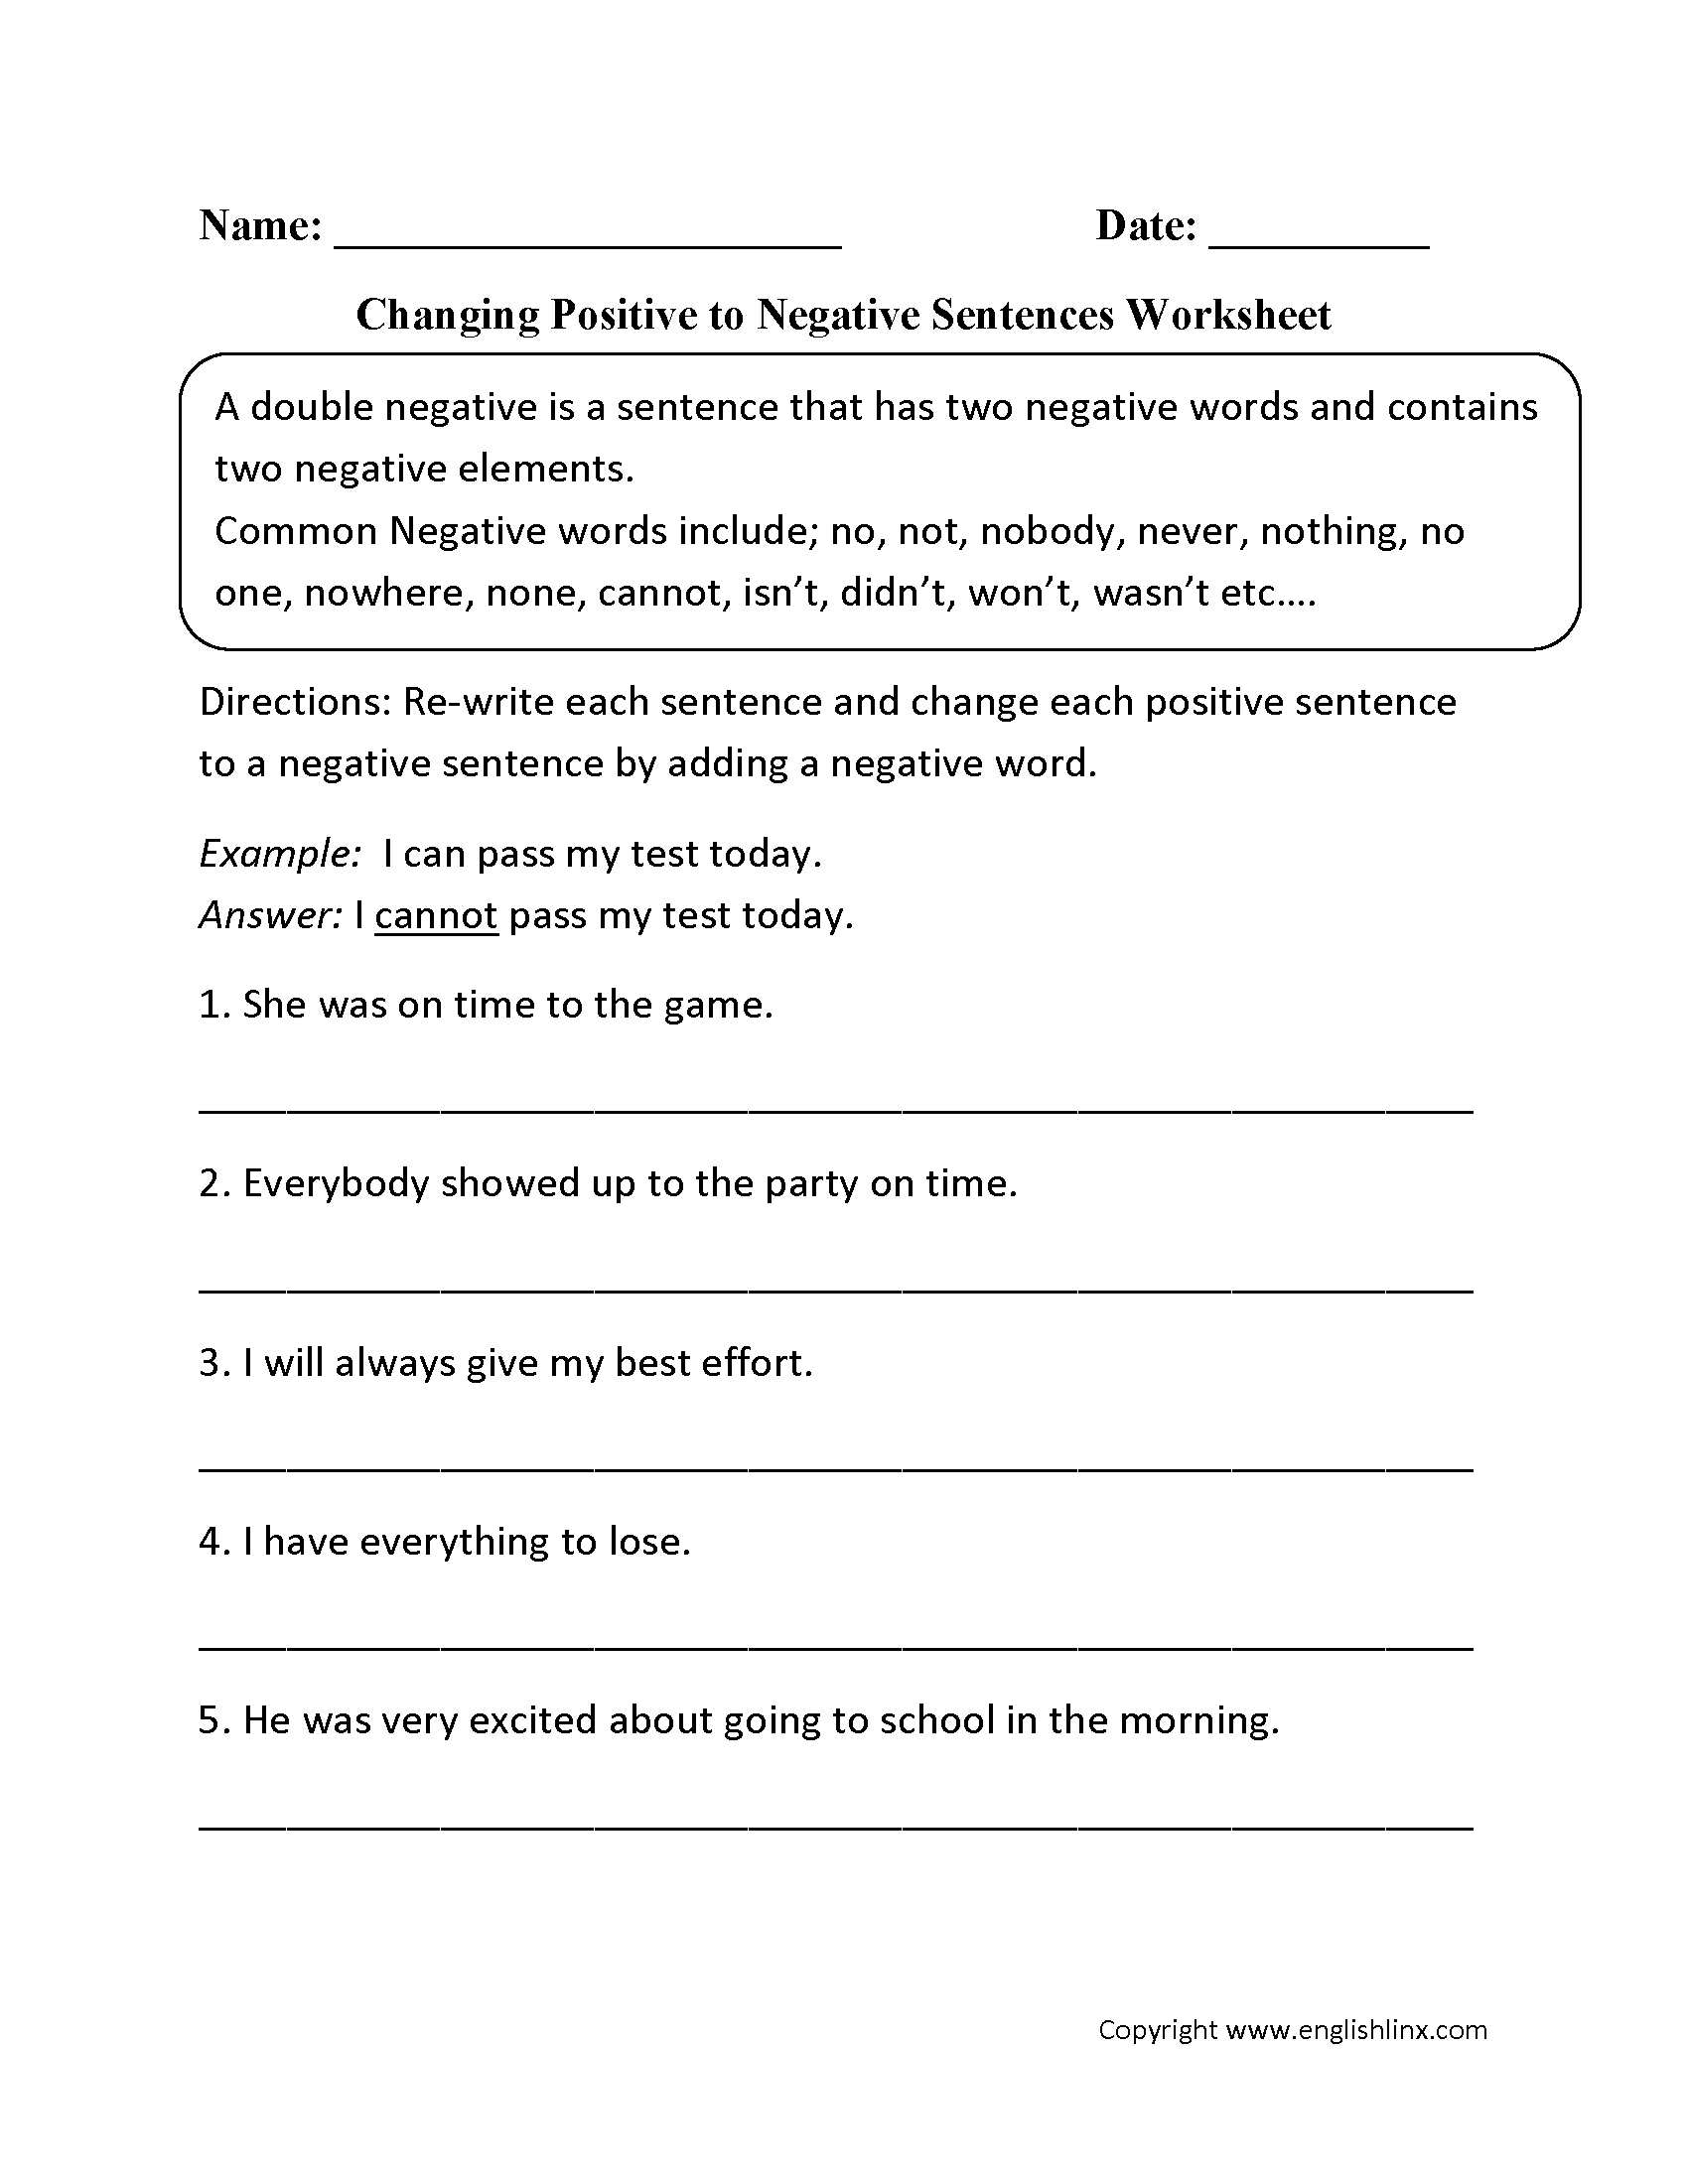 word-usage-worksheets-negatives-worksheets